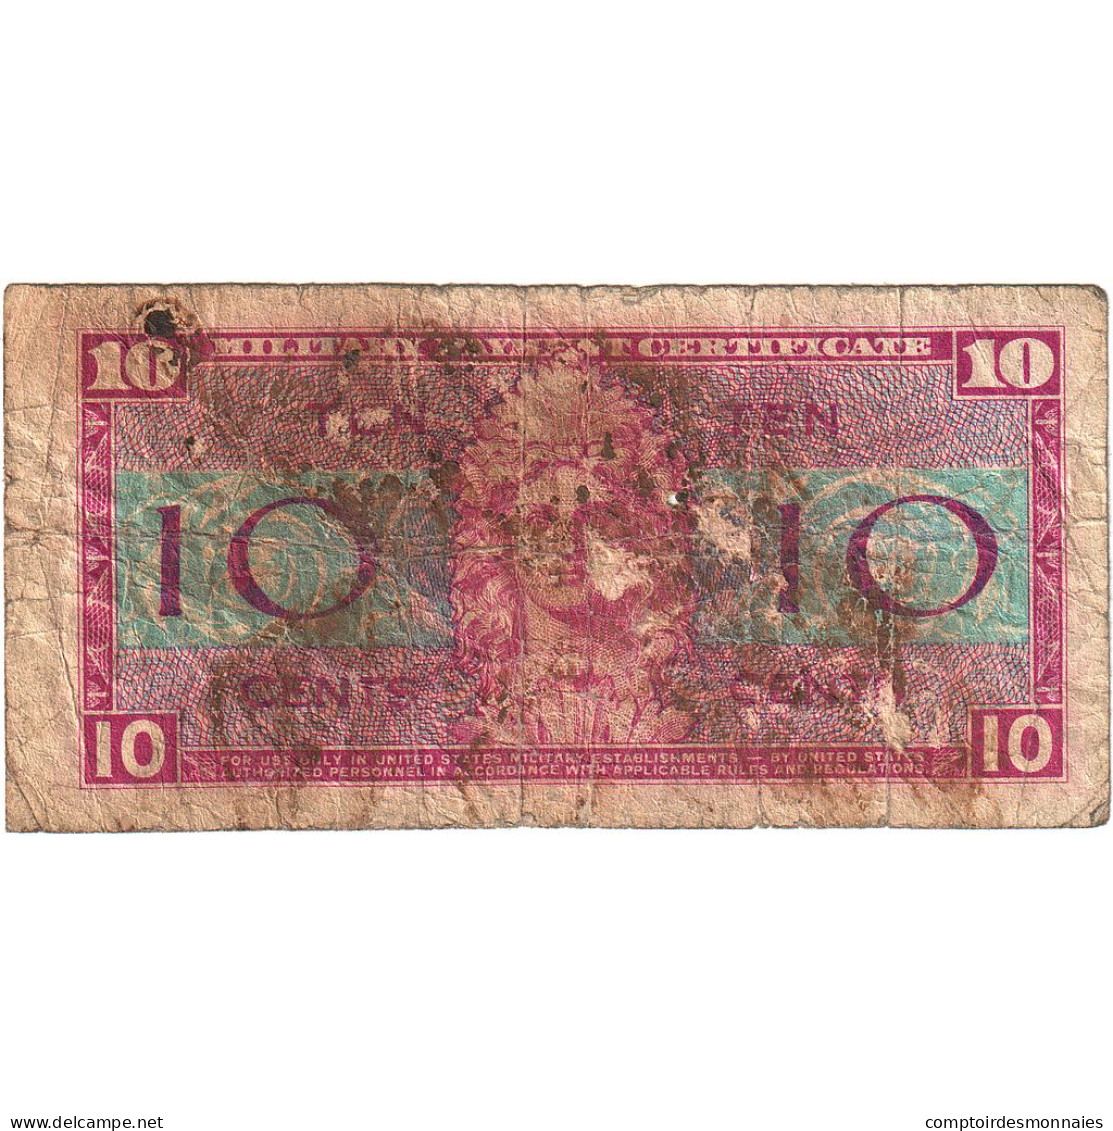 États-Unis, 10 Cents, TB - 1954-1958 - Series 521